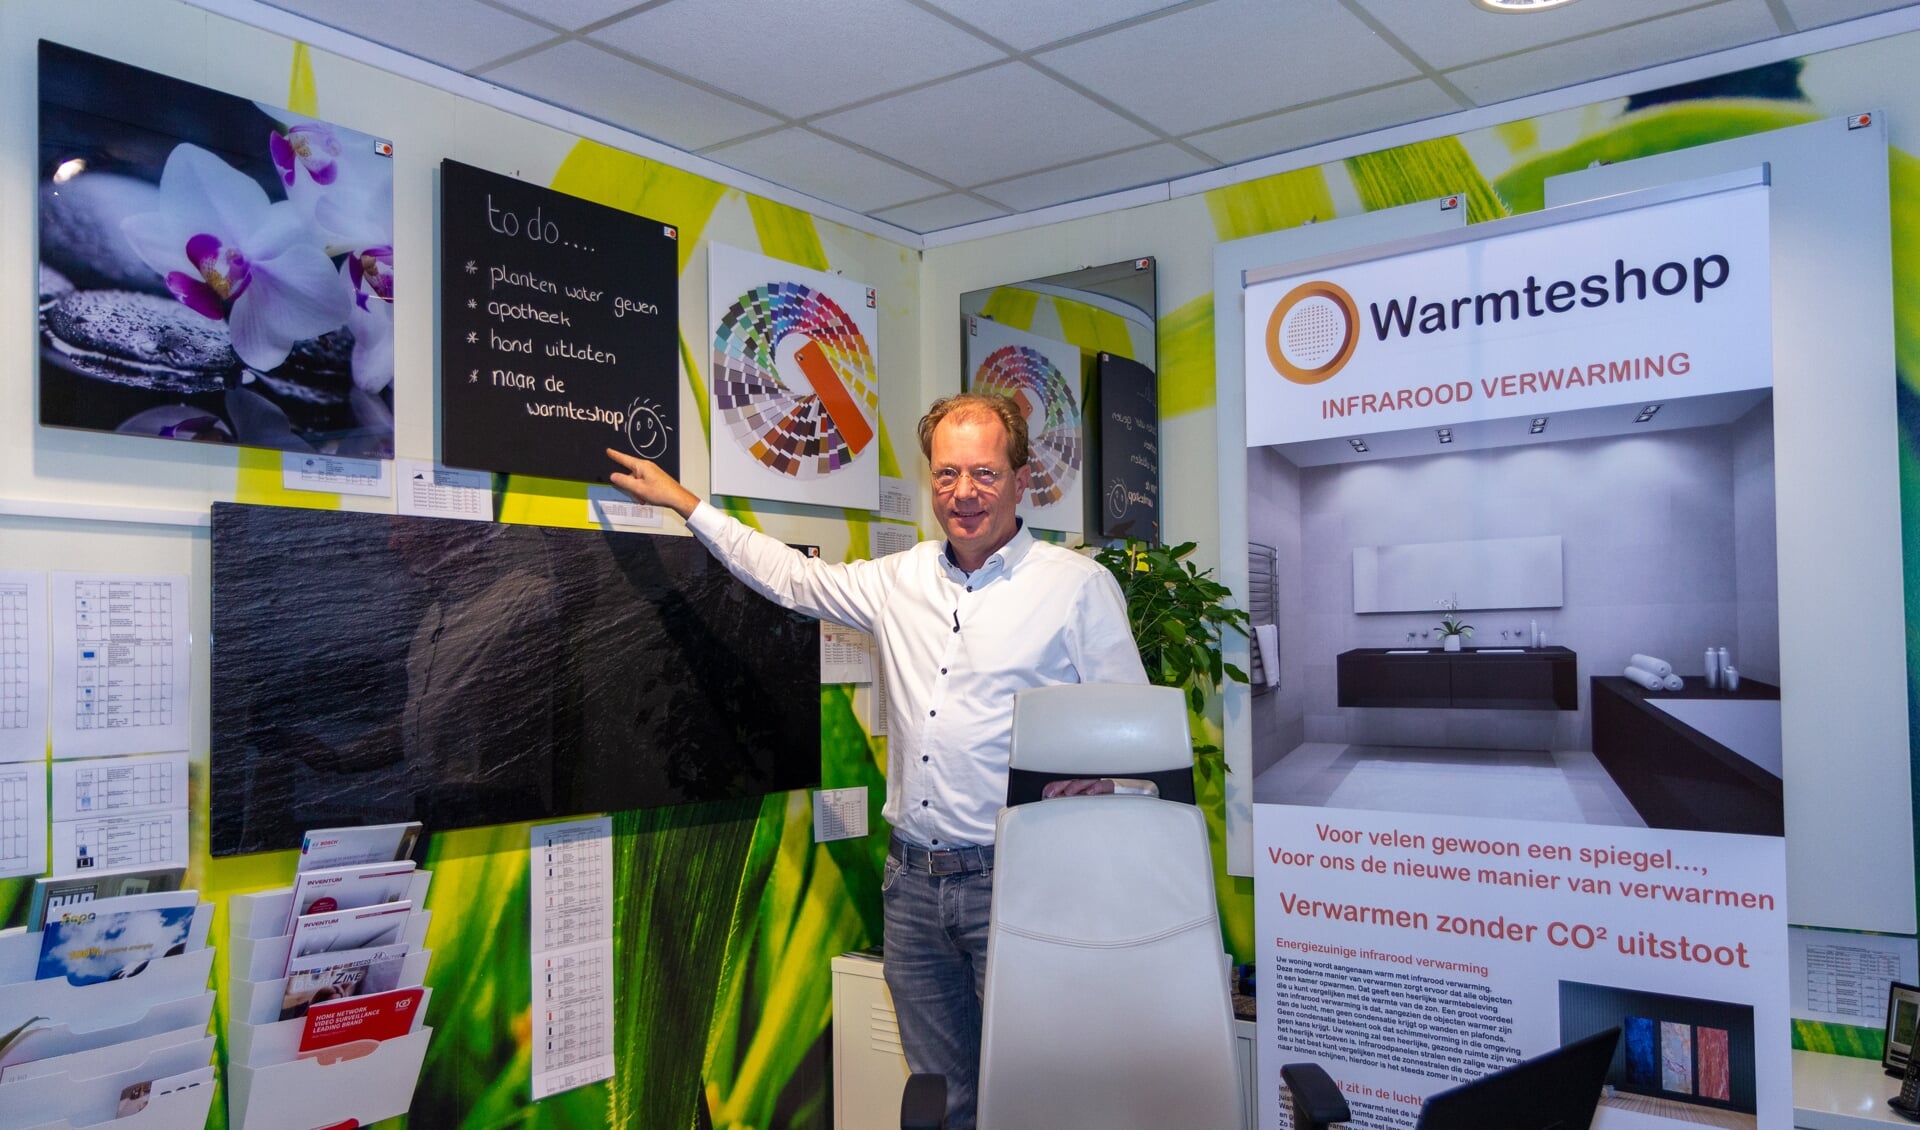 Erik Meijer in De Warmteshop bij een aantal infraroodpanelen, waarvan één zelfs voorzien is van een krijtbord.